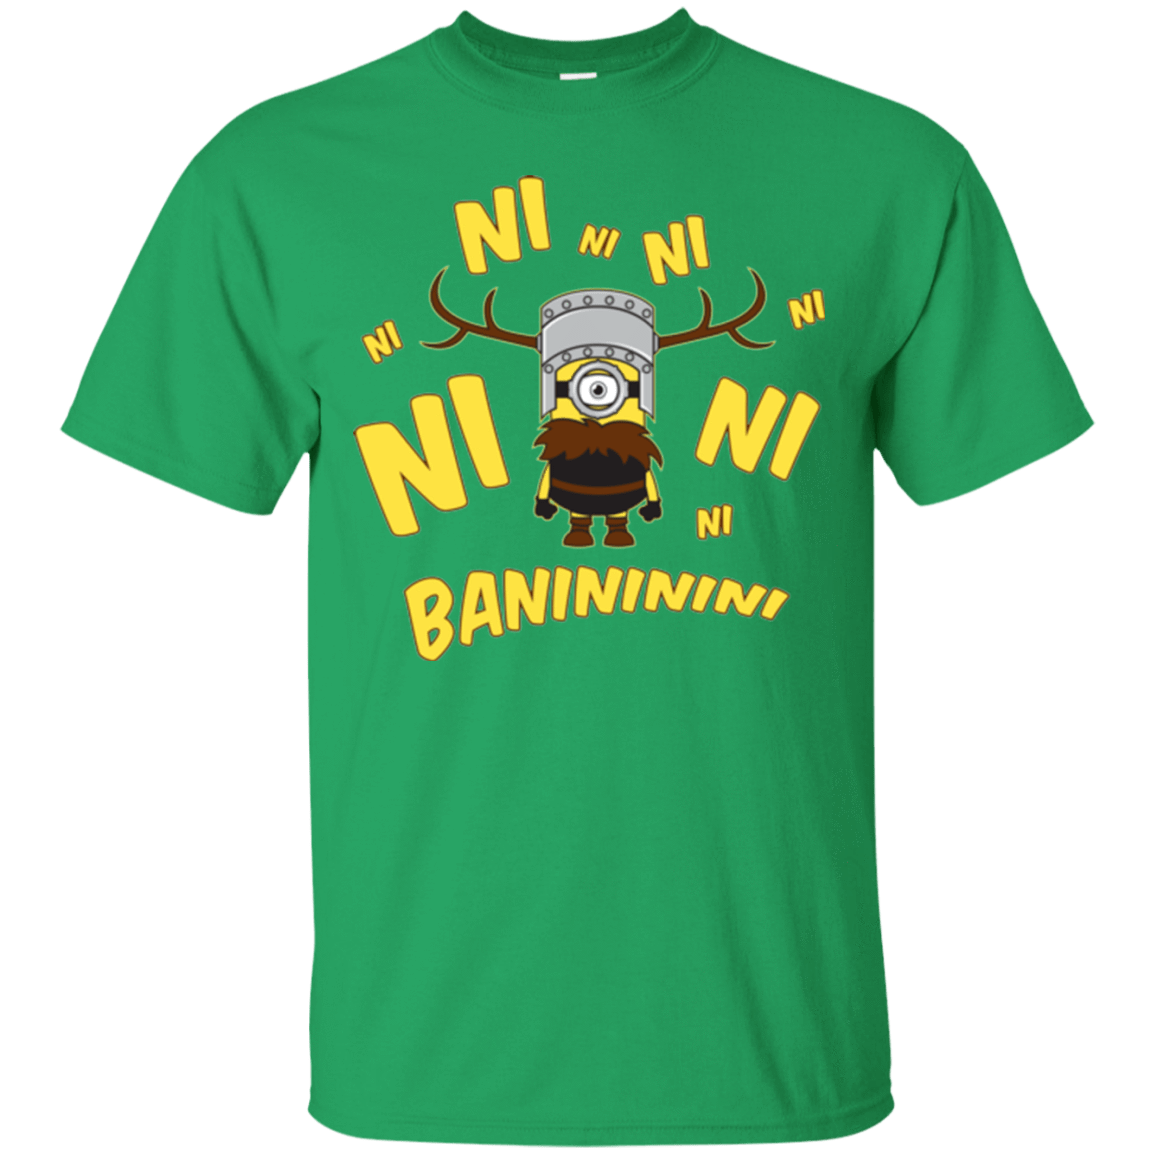 T-Shirts Irish Green / Small Baninini T-Shirt